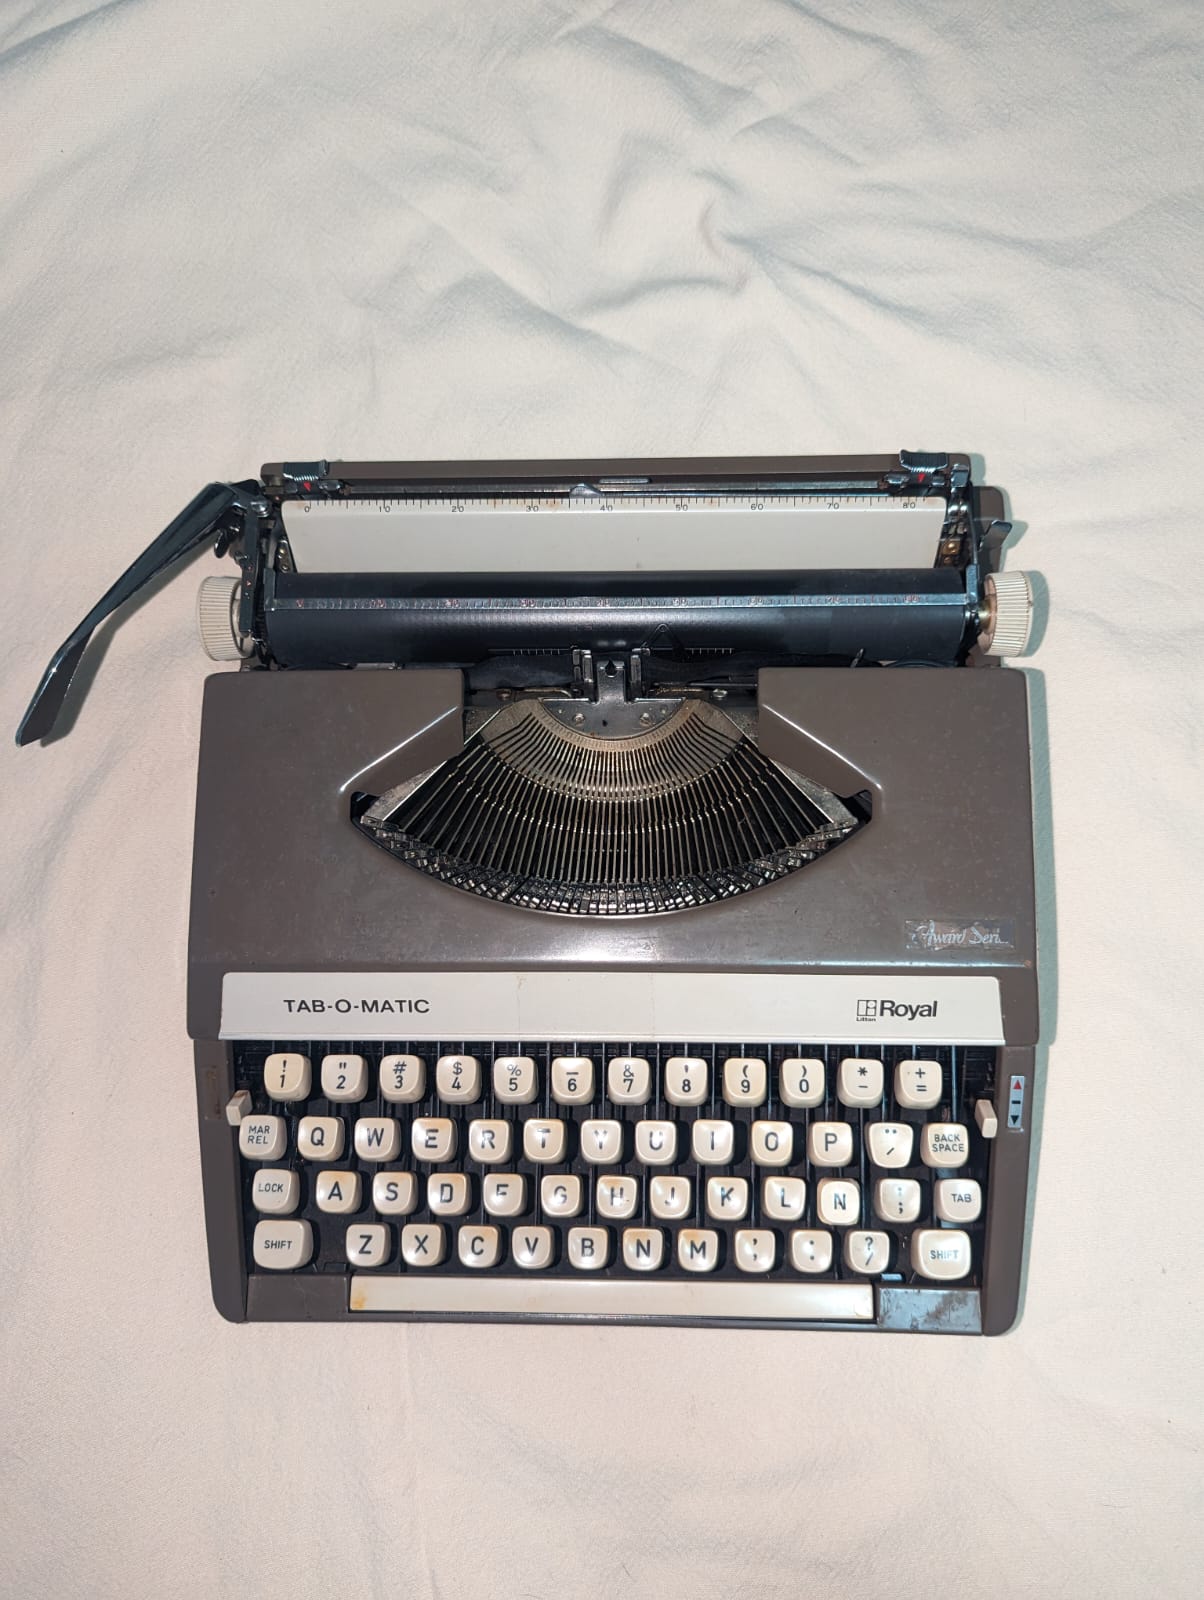 Alquilo o vendo Maquina de escribir TAB O MATIC 1971 Foto 7176790-1.jpg